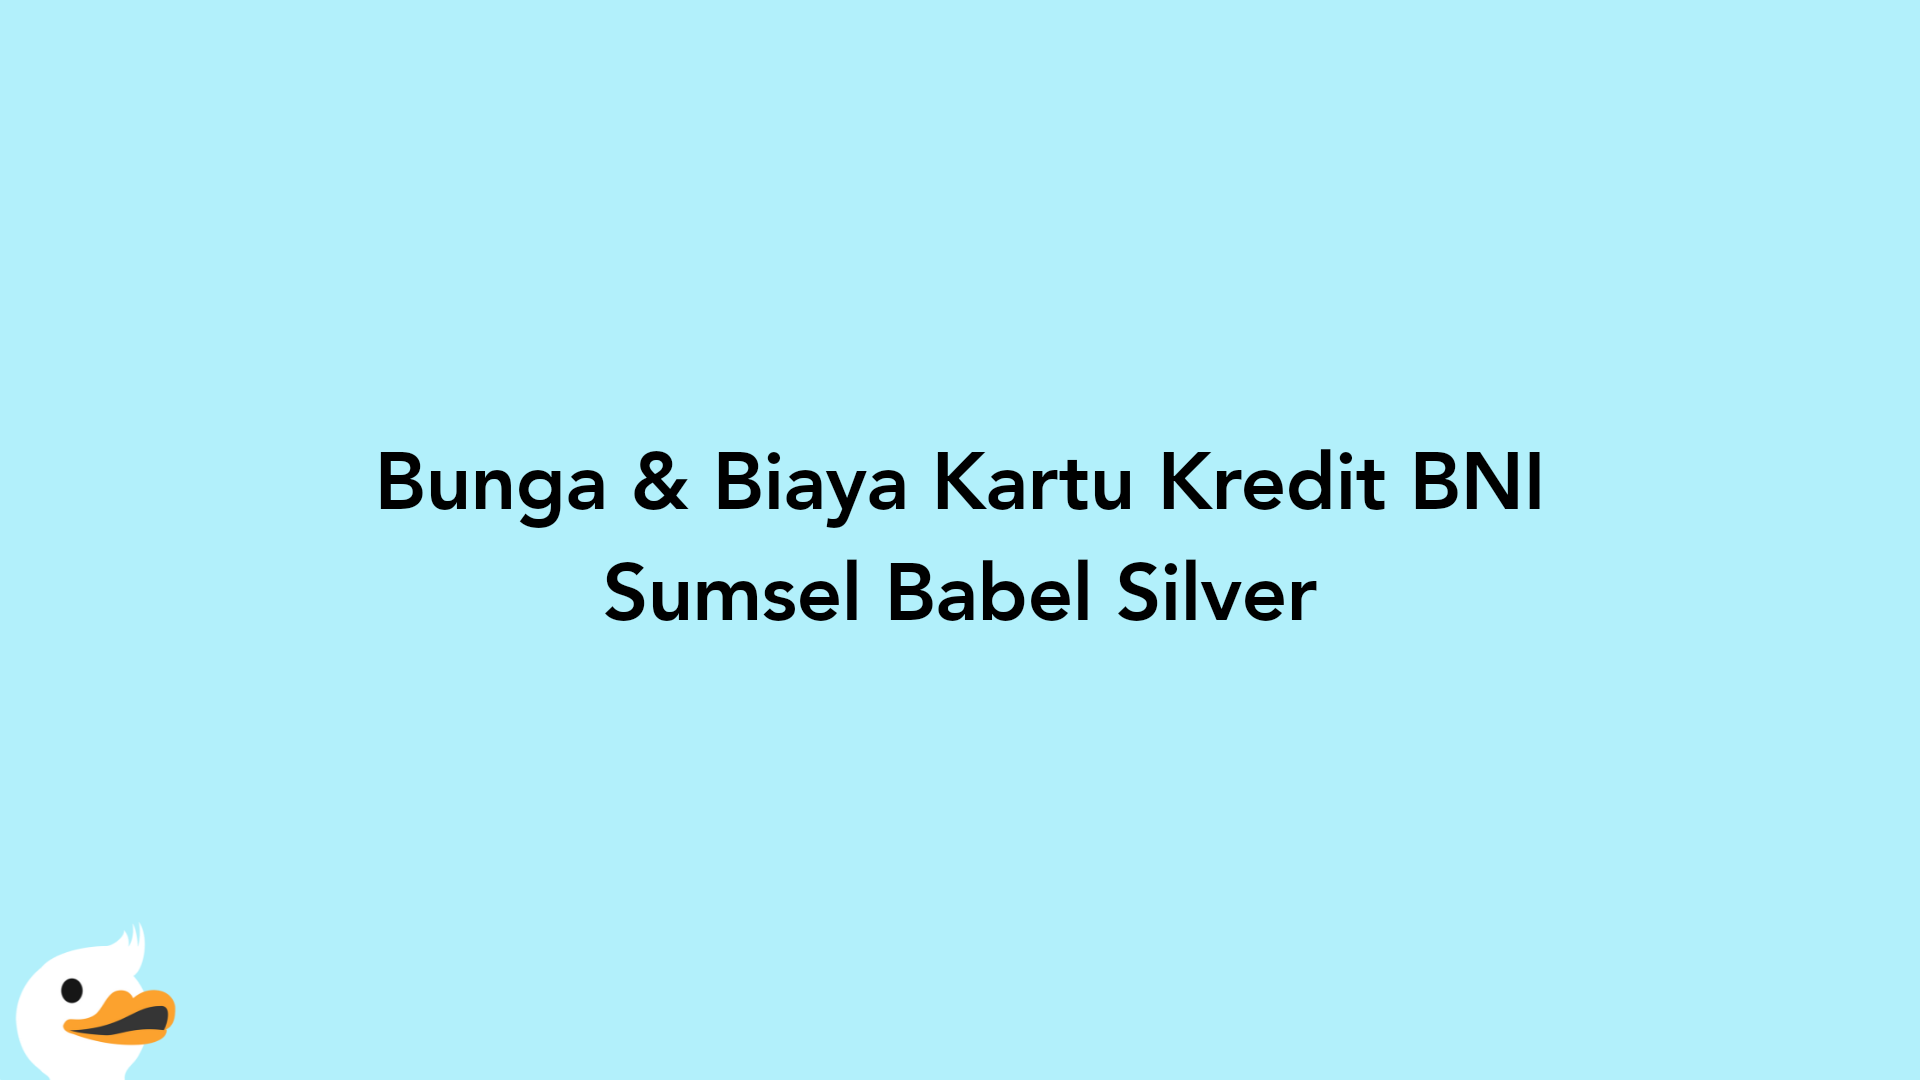 Bunga & Biaya Kartu Kredit BNI Sumsel Babel Silver